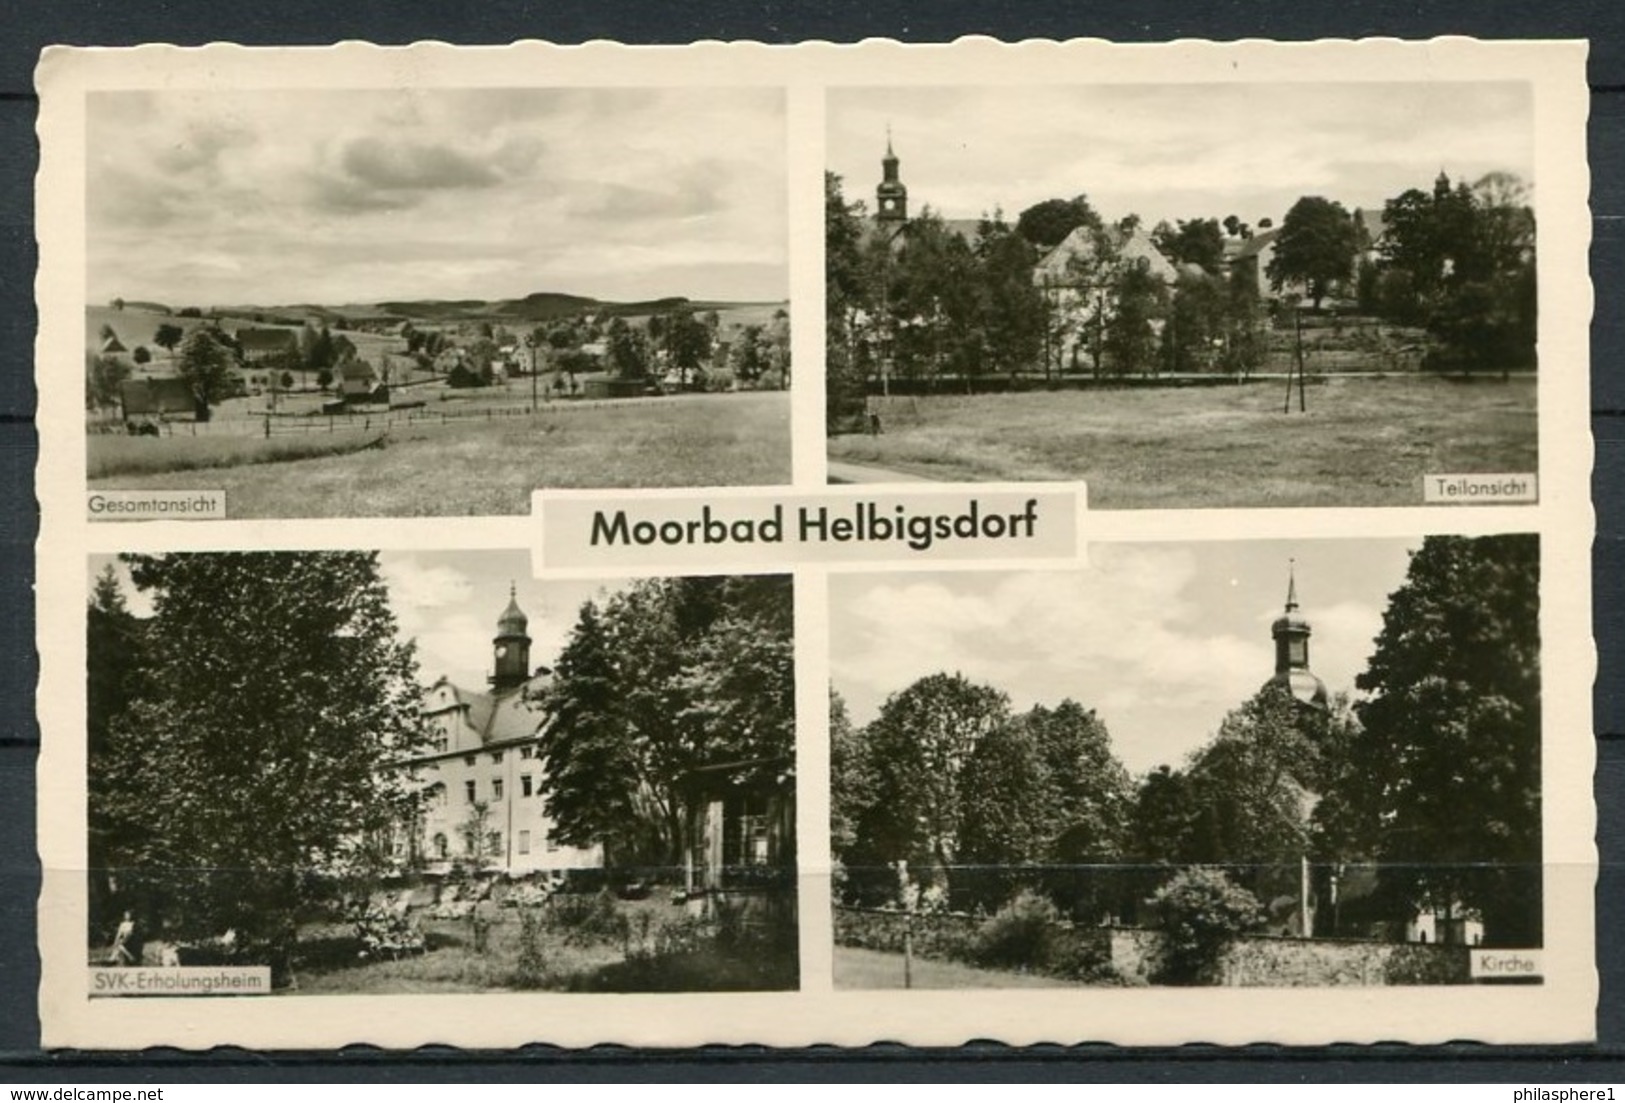 (1032) Moorbad Helbigsdorf / Mehrbildkarte S/w - Gel. 1957 - DDR - Mulda (Erzgeb.)